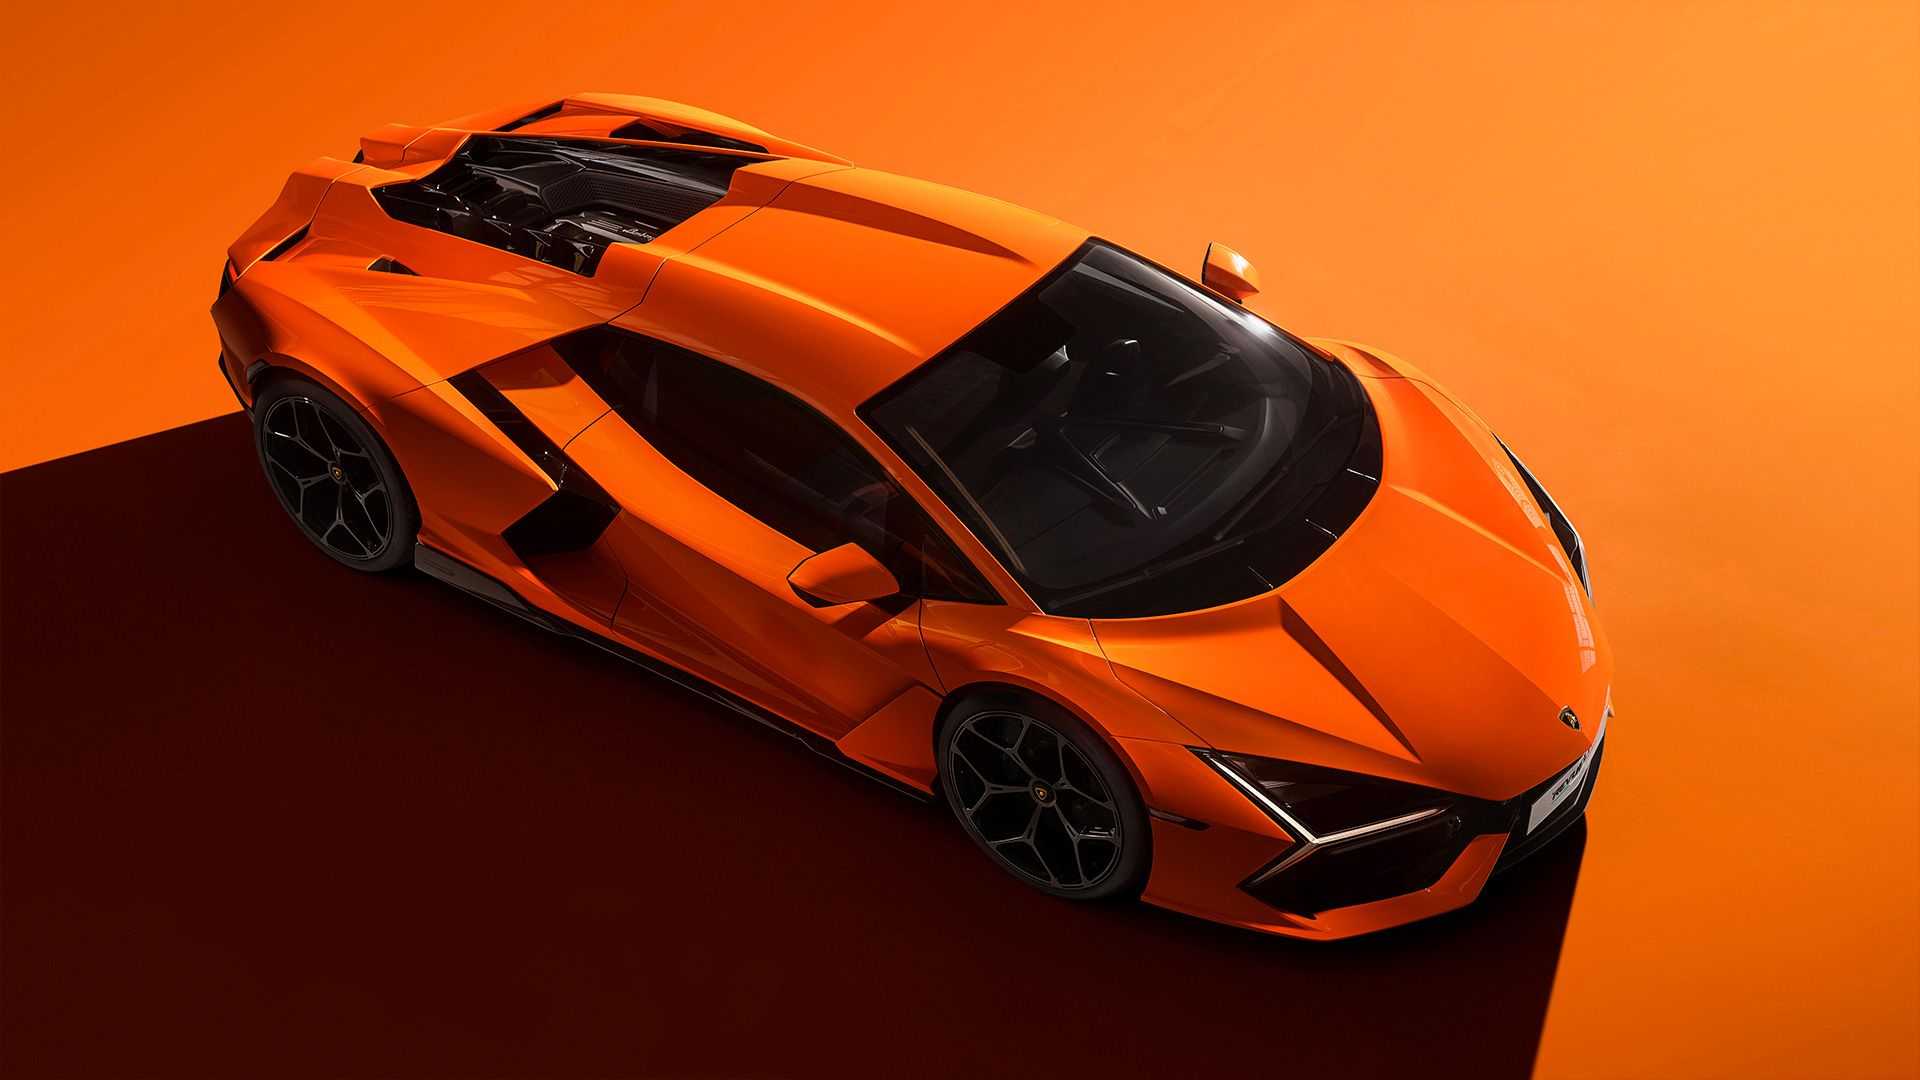 Ra mắt Lamborghini Revuelto thế chỗ Aventador: Siêu xe mạnh nhất lịch sử hãng nhưng đi phố chỉ ngang cơ Civic - ảnh 5